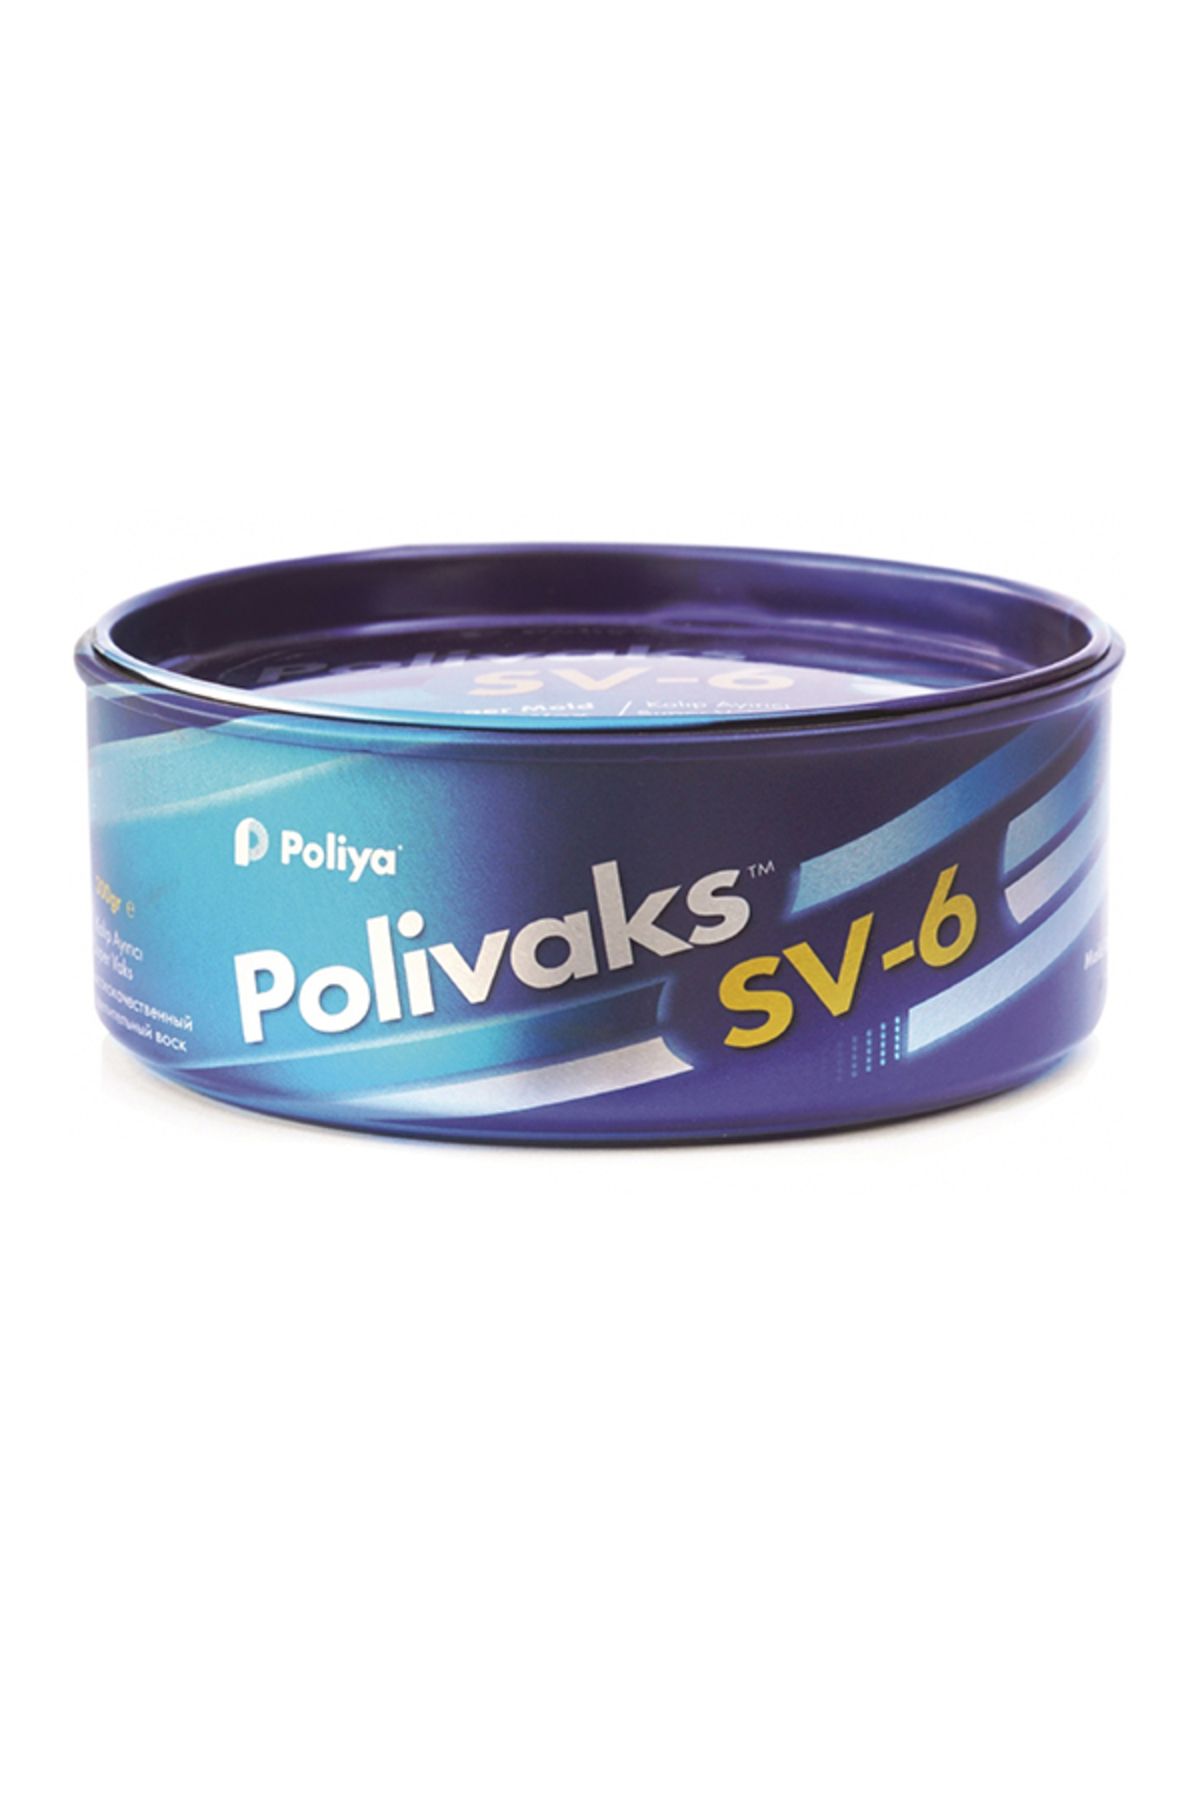 Polivaks Polivaks Macun Sv6 Wax - Kalıp Ayırıcı 300 G